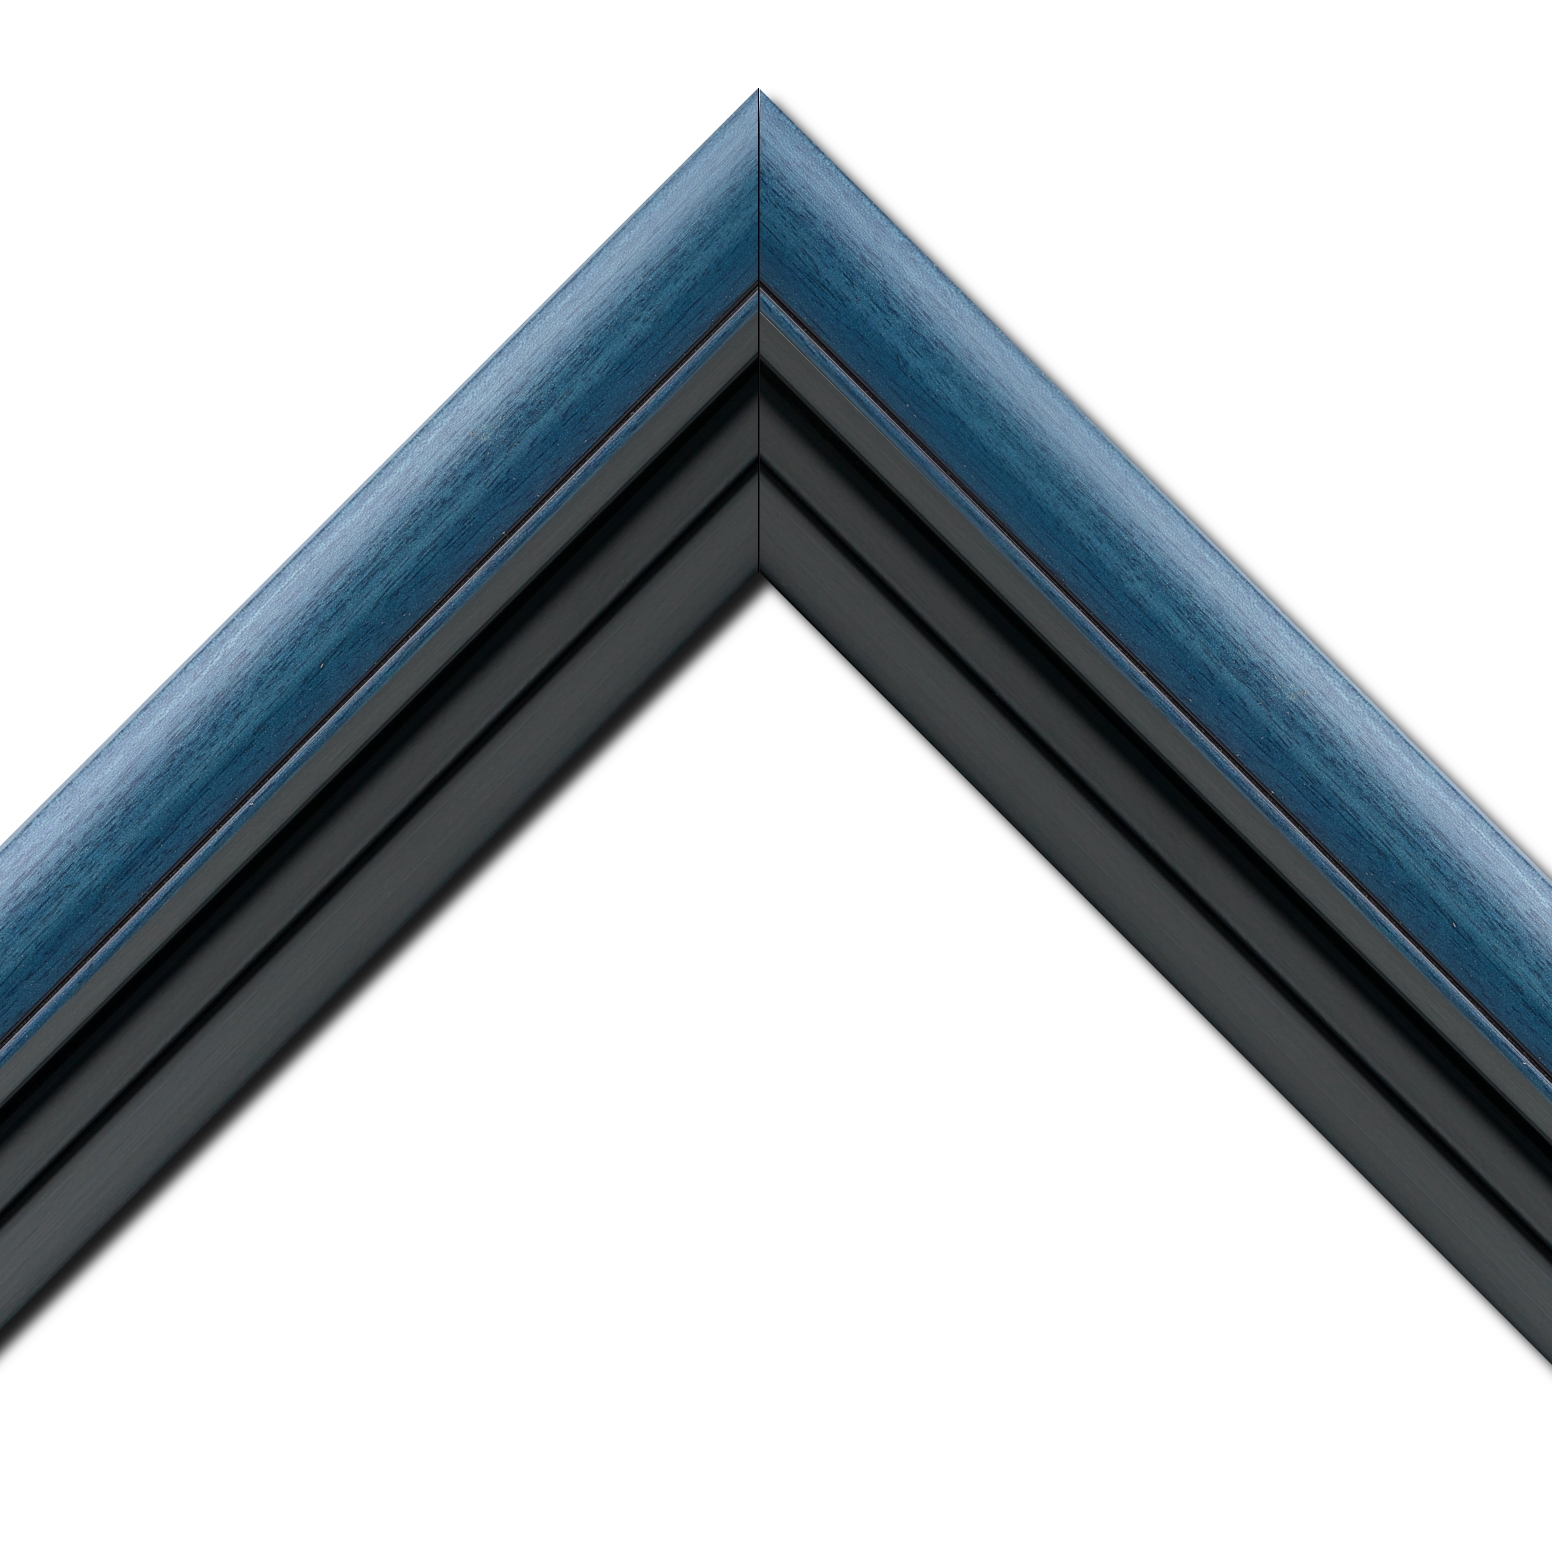 Baguette bois profil arrondi largeur 4.7cm couleur bleu cobalt satiné rehaussé d'un filet noir + bois caisse américaine profil escalier largeur 4.4cm noir mat   (spécialement conçu pour les châssis d'une épaisseur jusqu’à 2.5cm ) largeur total du cadre : 8.3cm